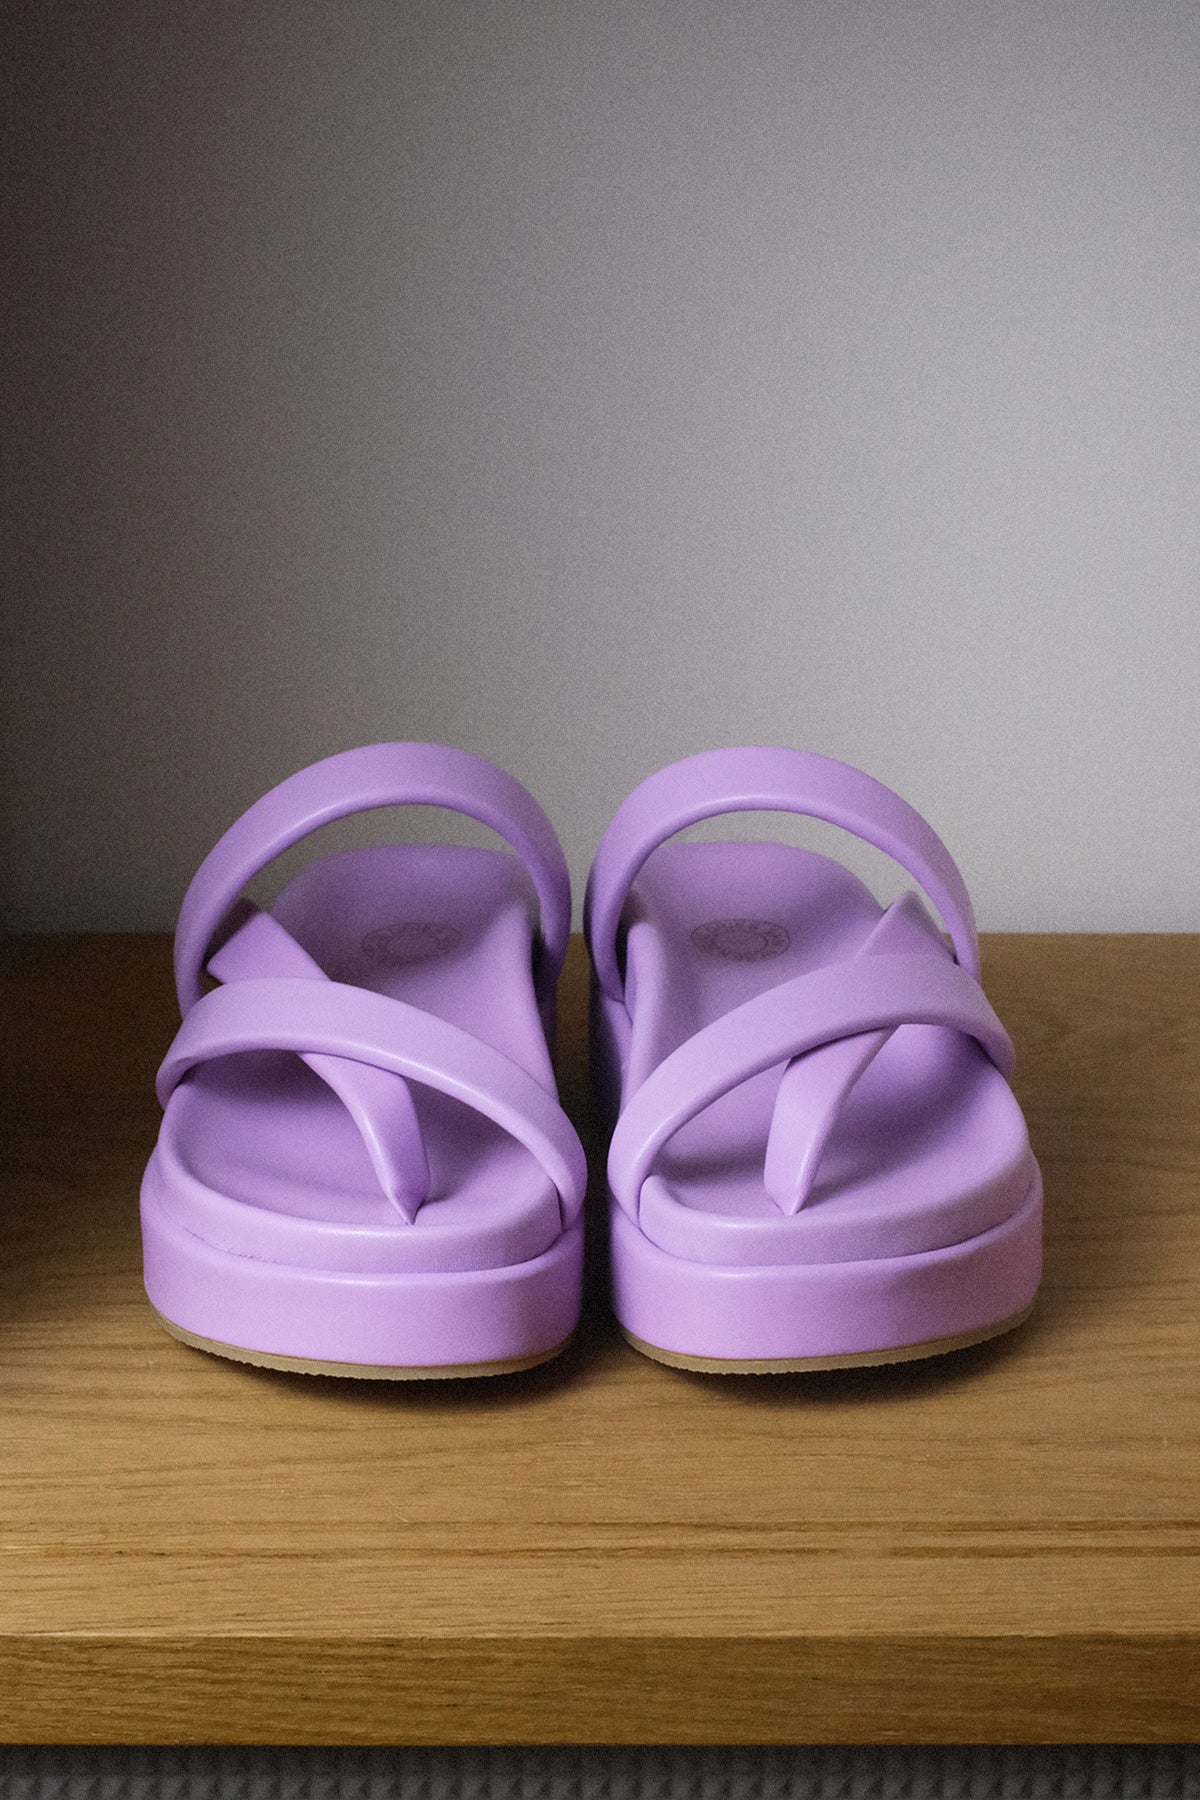 Dries van Noten — Sandals / Lilac